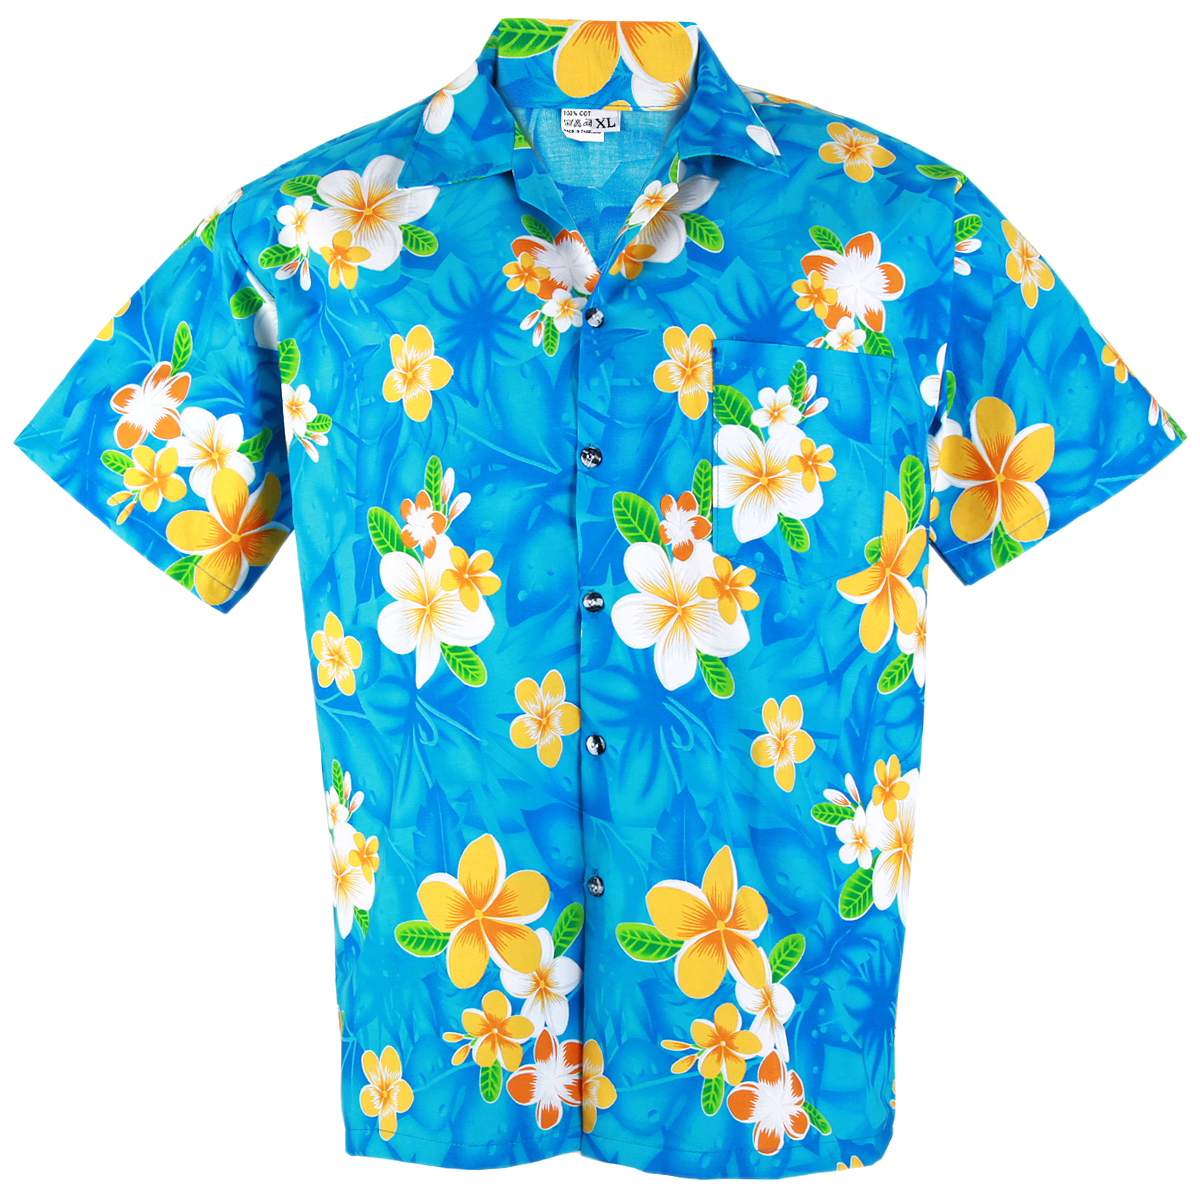 Гавайская рубашка вб. Желтая Гавайская рубашка Эйса. Рубашка гавайка. Голубая Гавайская рубашка. Красная Гавайская рубашка.